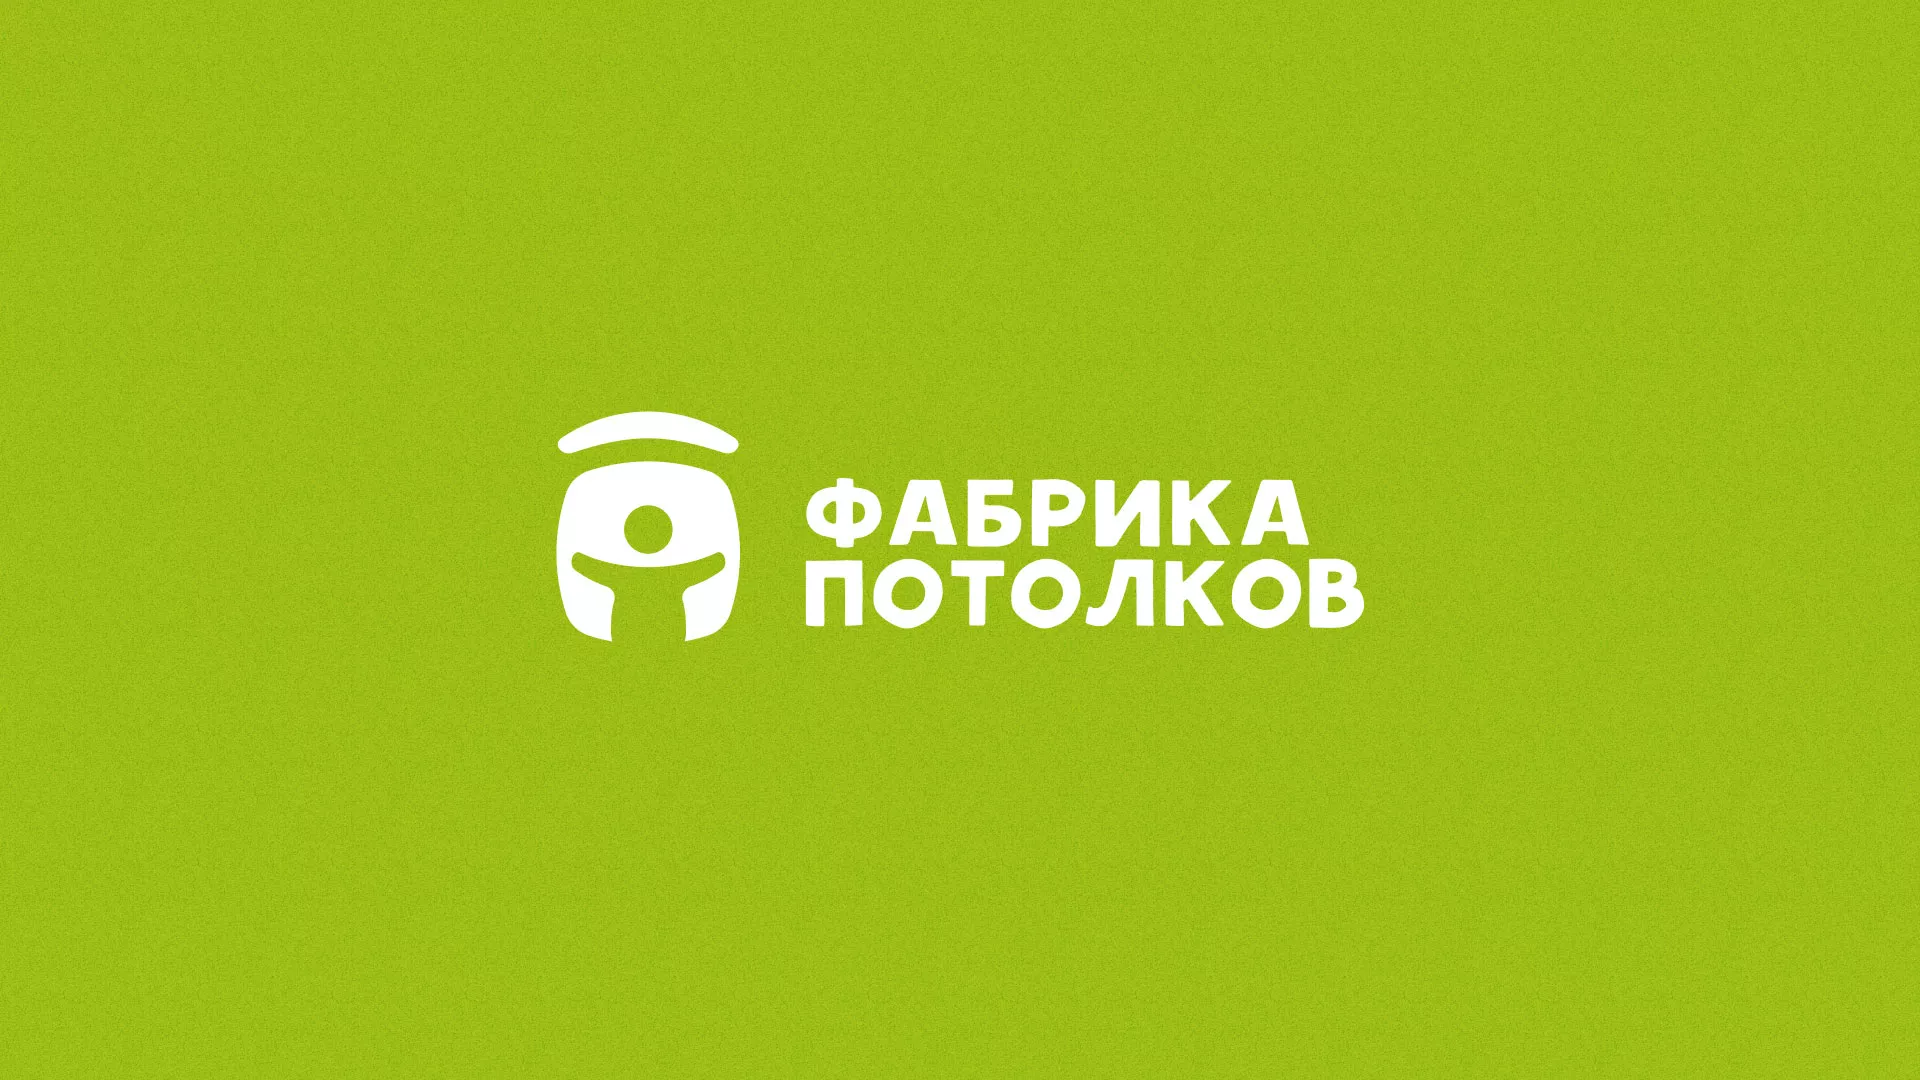 Разработка логотипа для производства натяжных потолков в Великом Новгороде